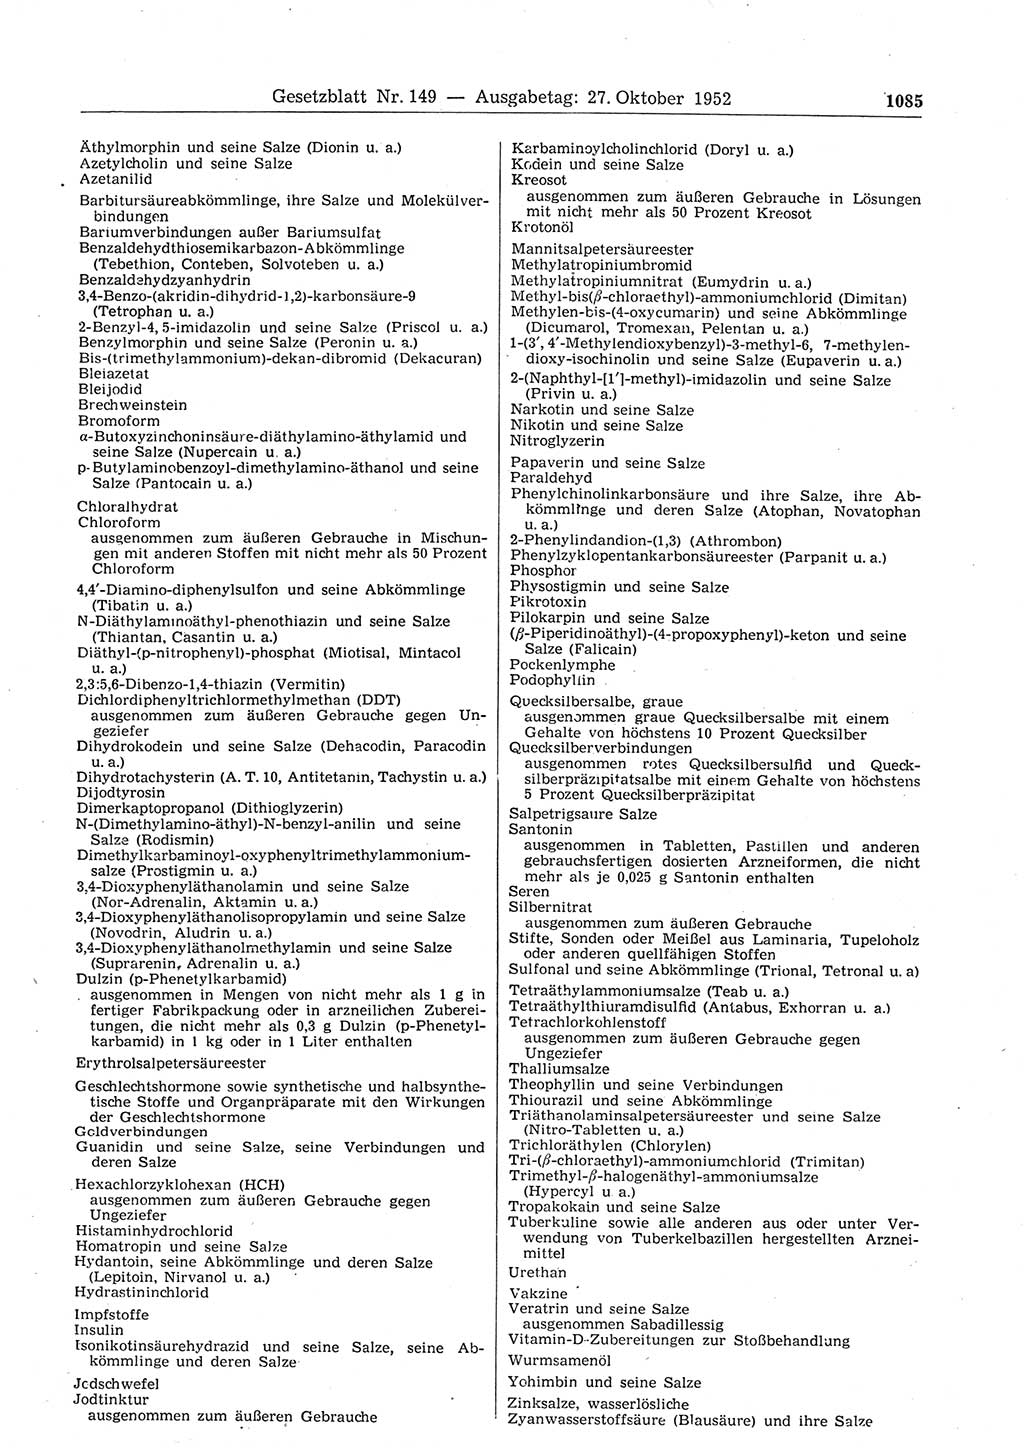 Gesetzblatt (GBl.) der Deutschen Demokratischen Republik (DDR) 1952, Seite 1085 (GBl. DDR 1952, S. 1085)